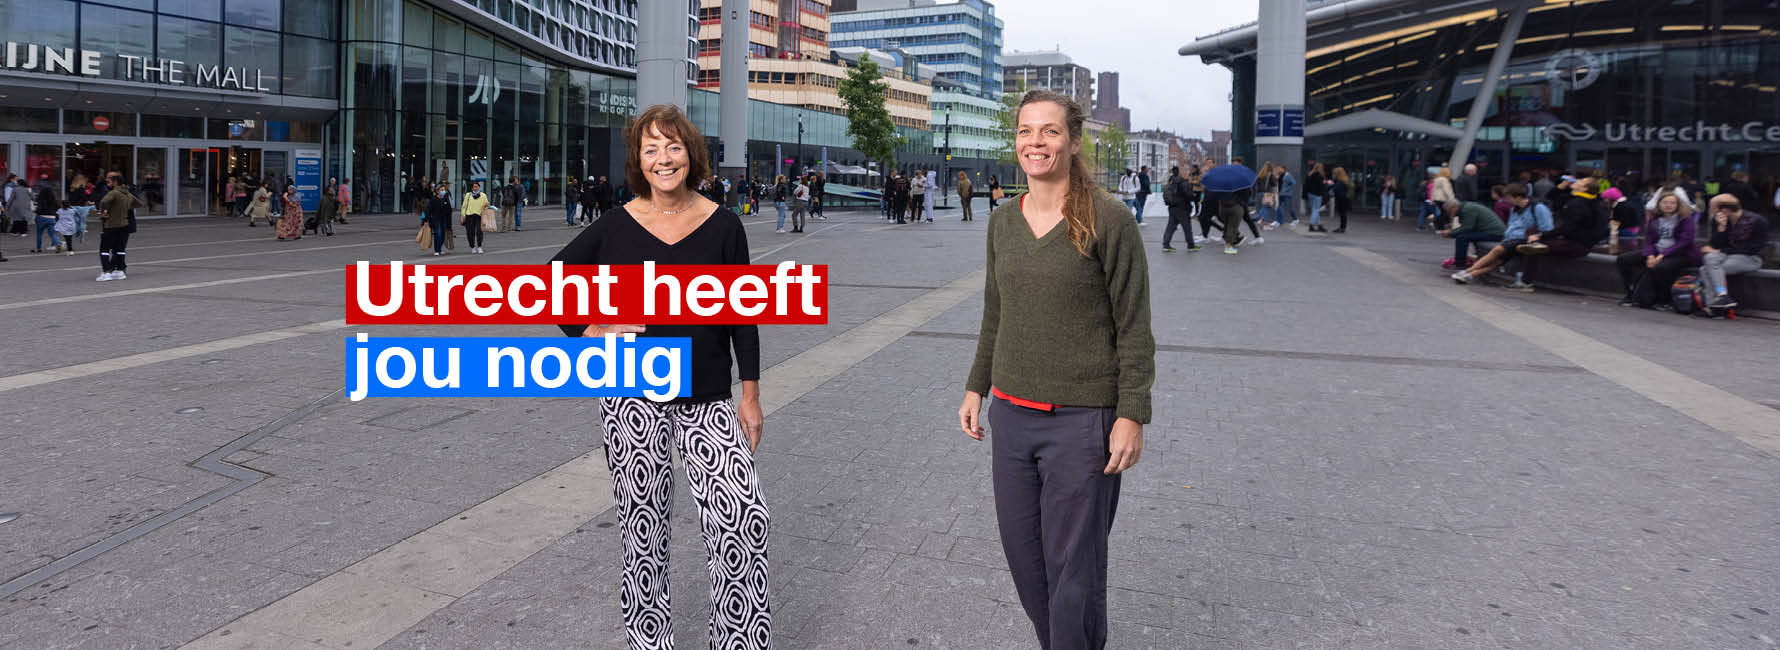 Twee vrouwen op het stationsplein. In beeld staat de tekst Utrecht heeft jou nodig.